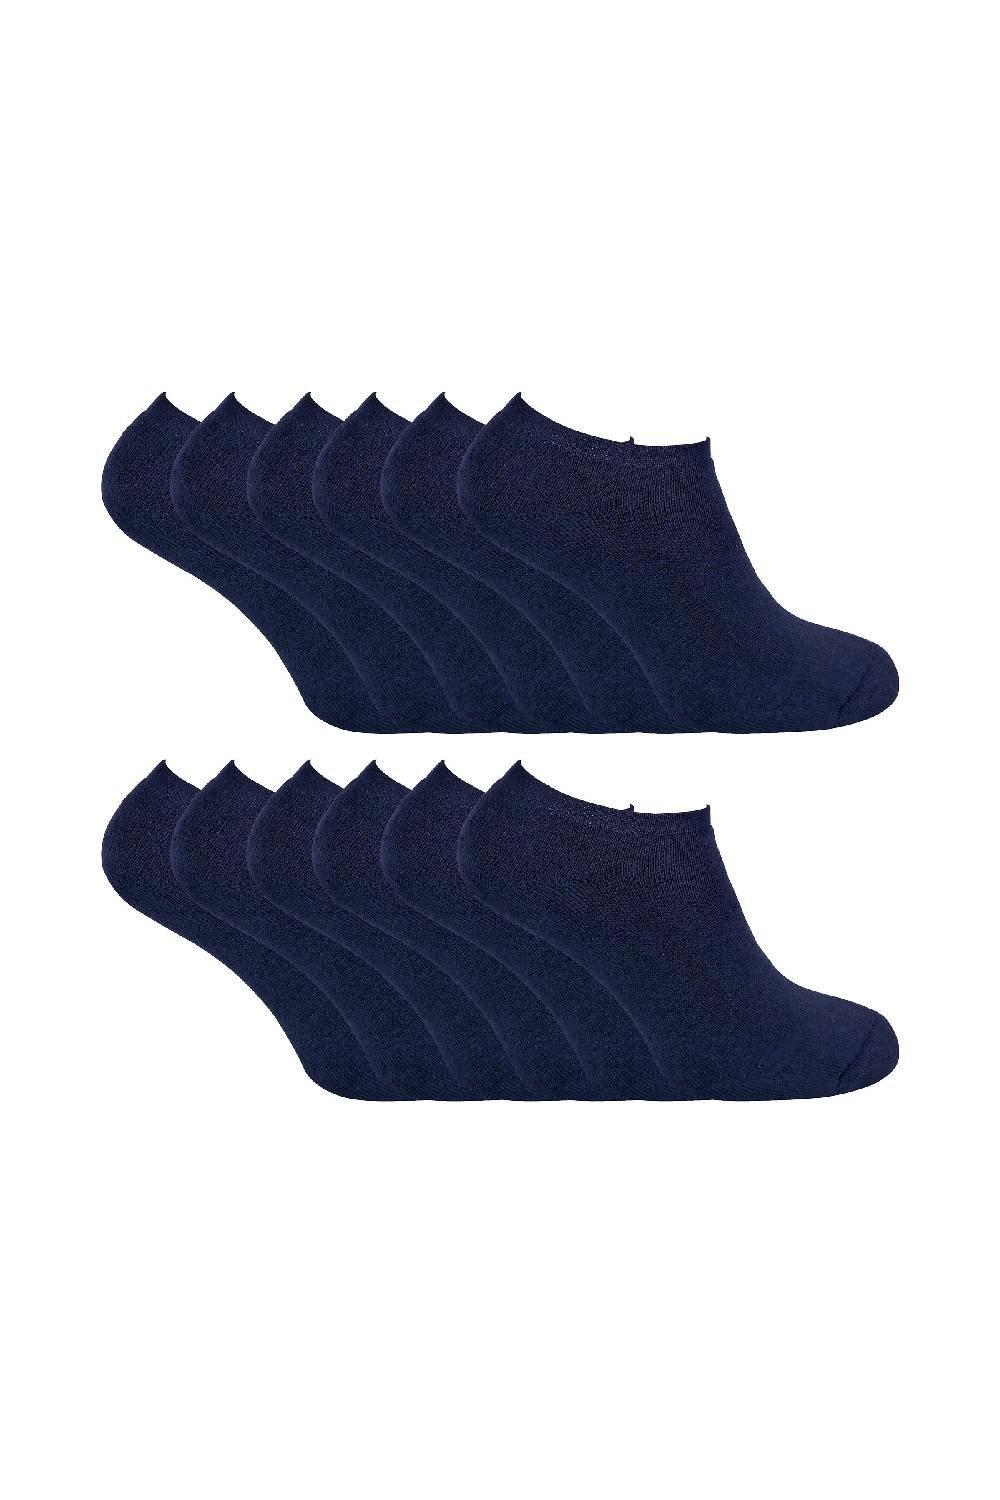 12 Pair Multipack Thermal Low Cut Trainer Winter Socks